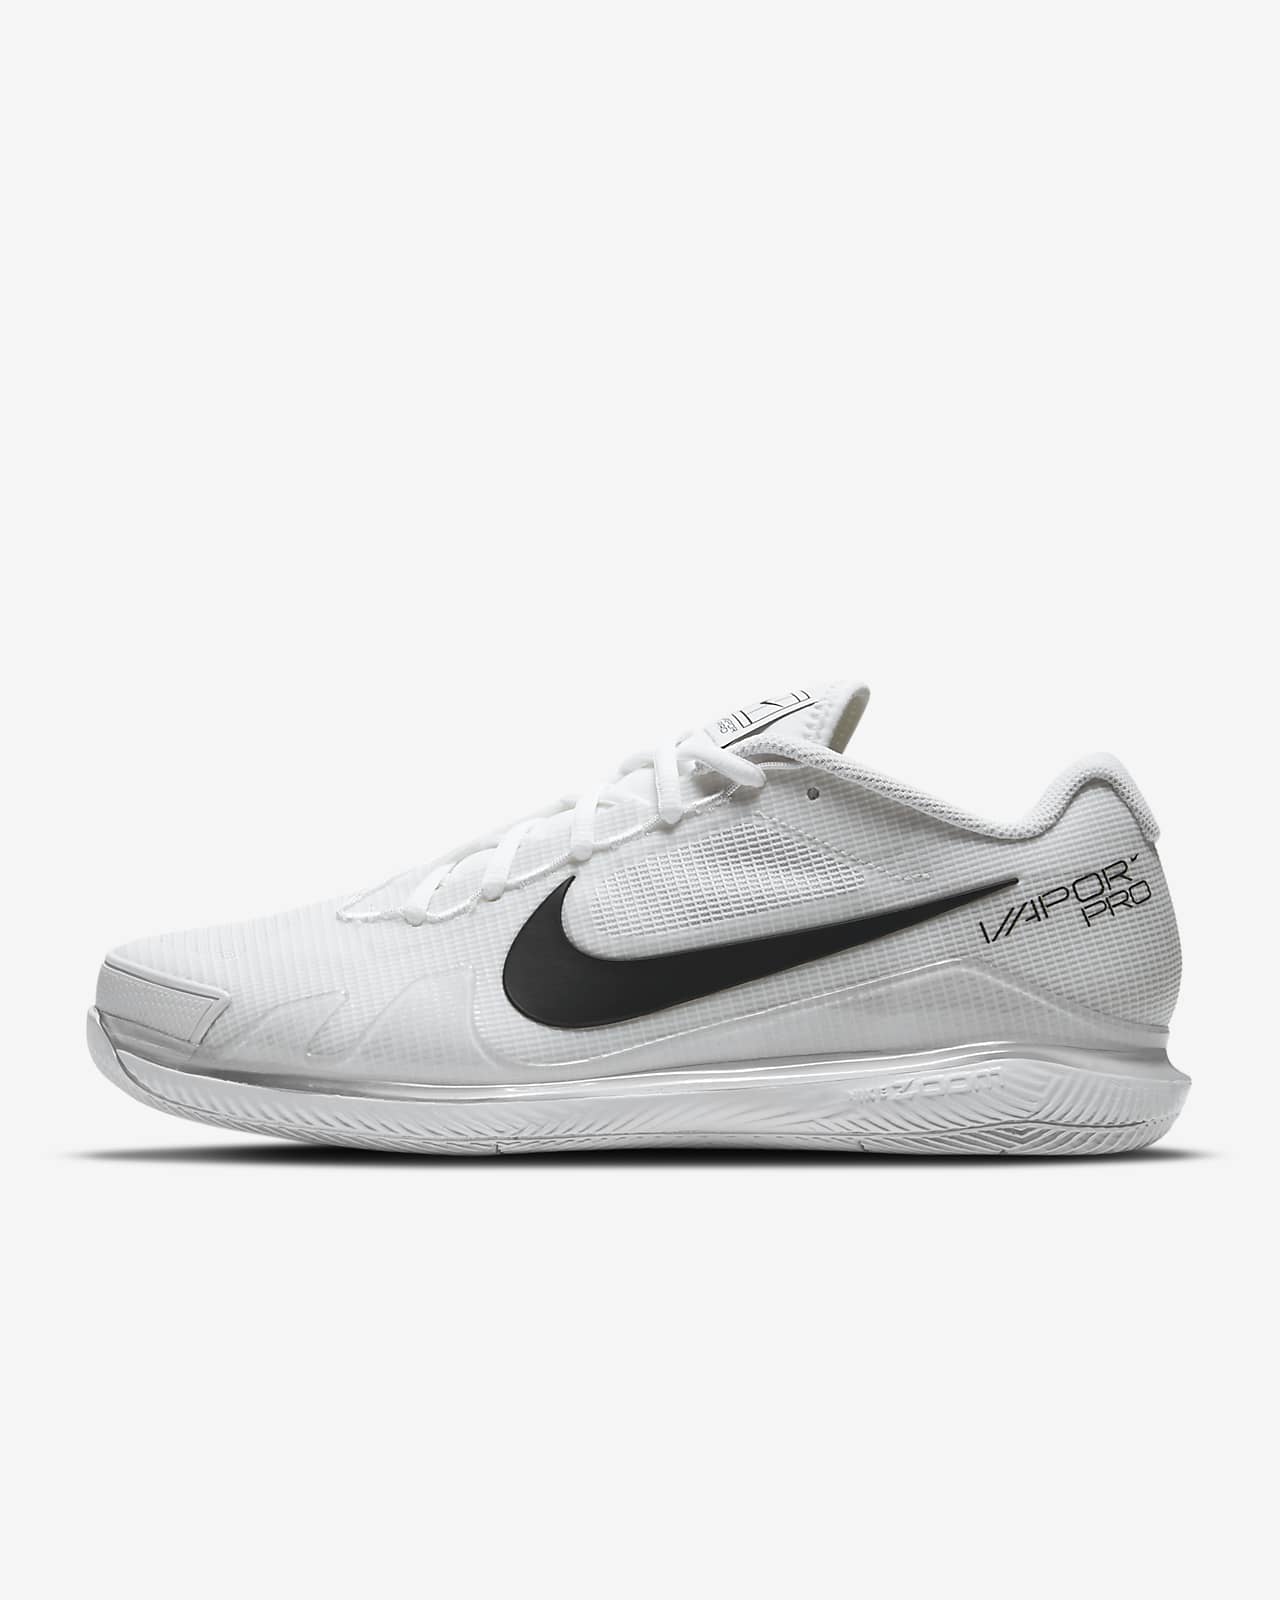 Ανδρικό παπούτσι τένις για σκληρά γήπεδα NikeCourt Air Zoom Vapor Pro